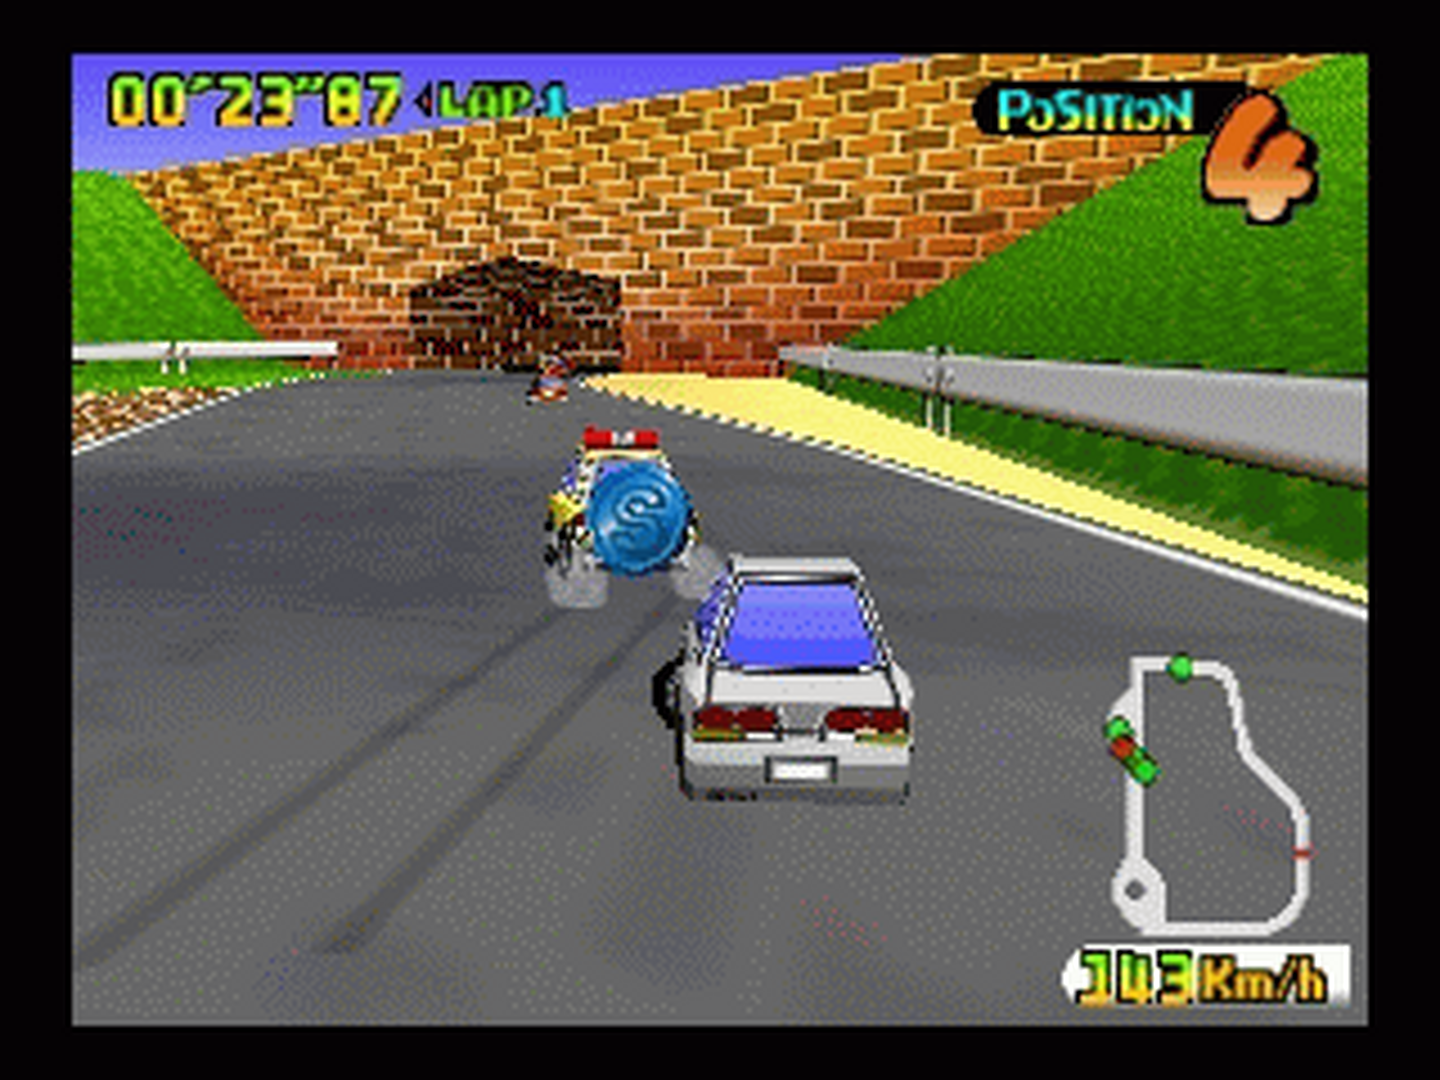 N64 GameBase Choro_Q_64_(J) Takara 1998